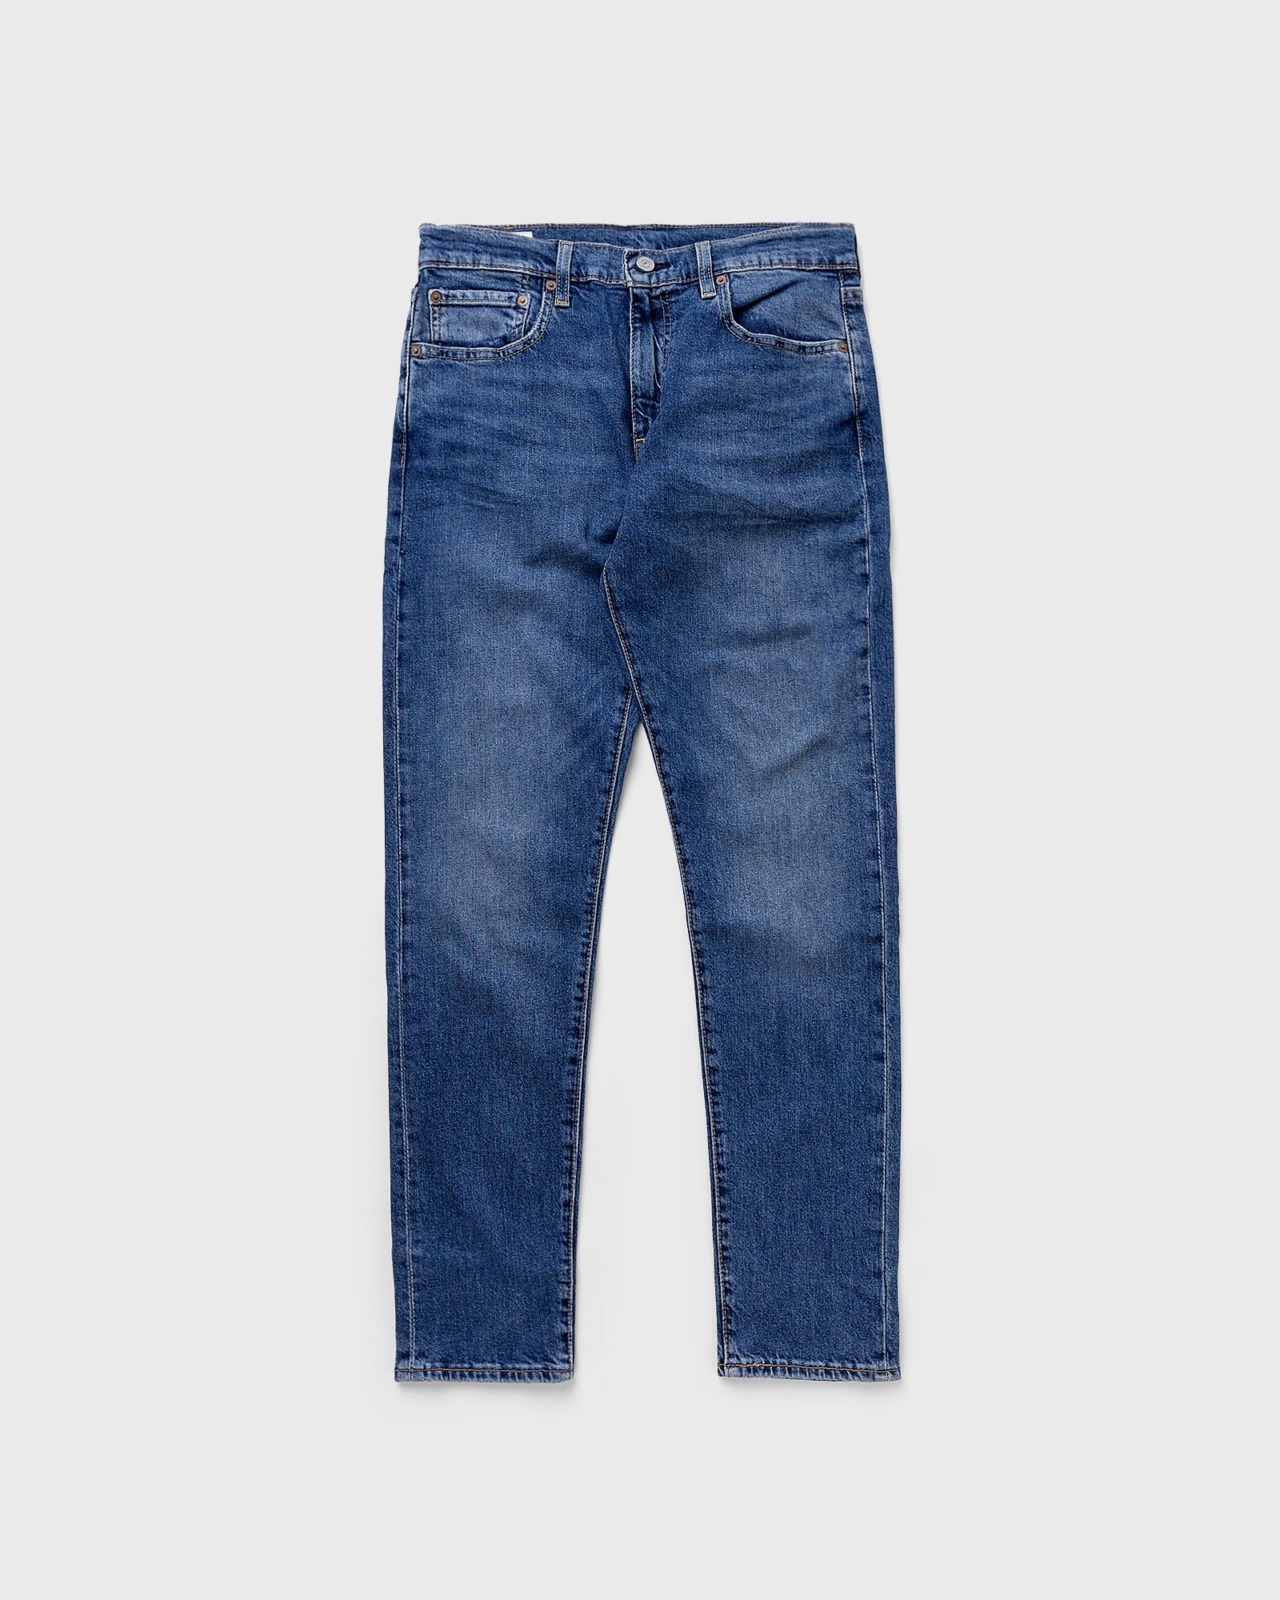 Bstn - Blue - Men's Jeans - Levi's GOOFASH